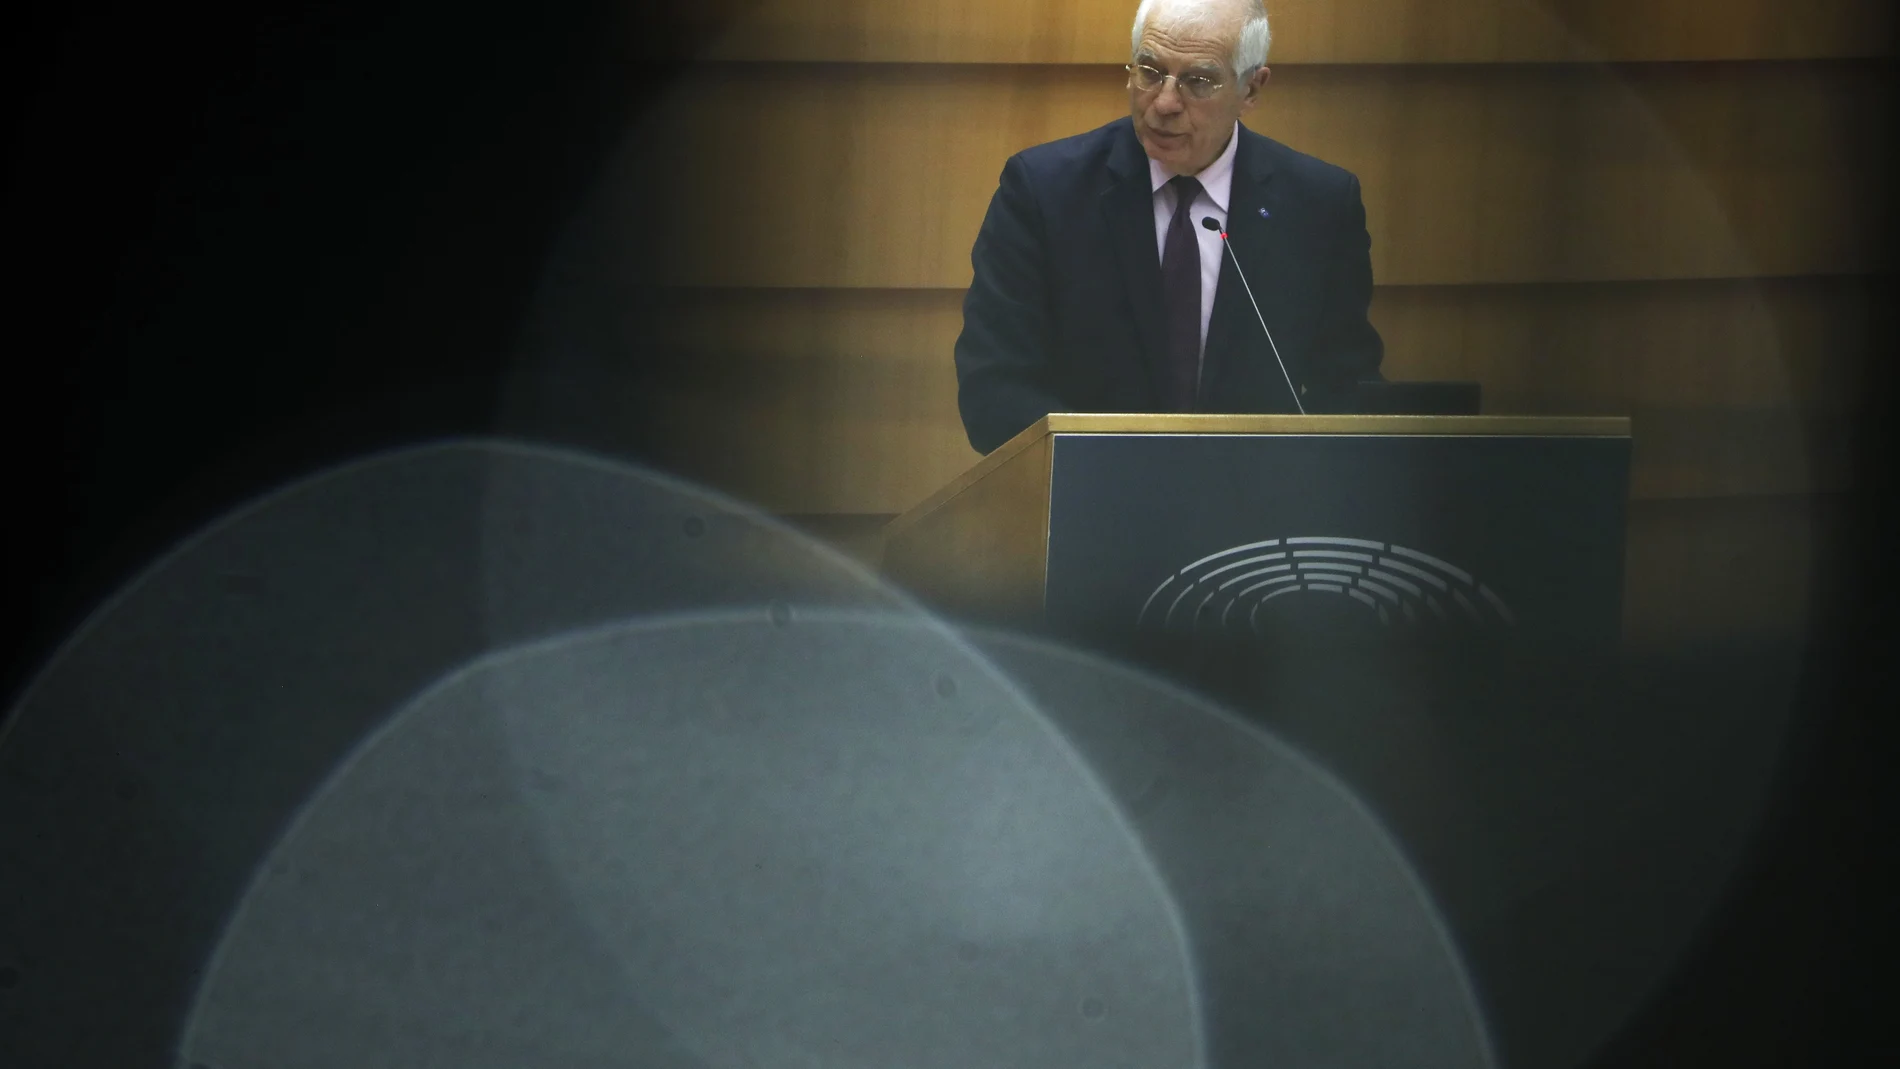 El jefe de política exterior de la Unión Europea, Josep Borrell, se dirige a los eurodiputados en el Parlamento Europeo en Bruselas tras su viaje a Moscú